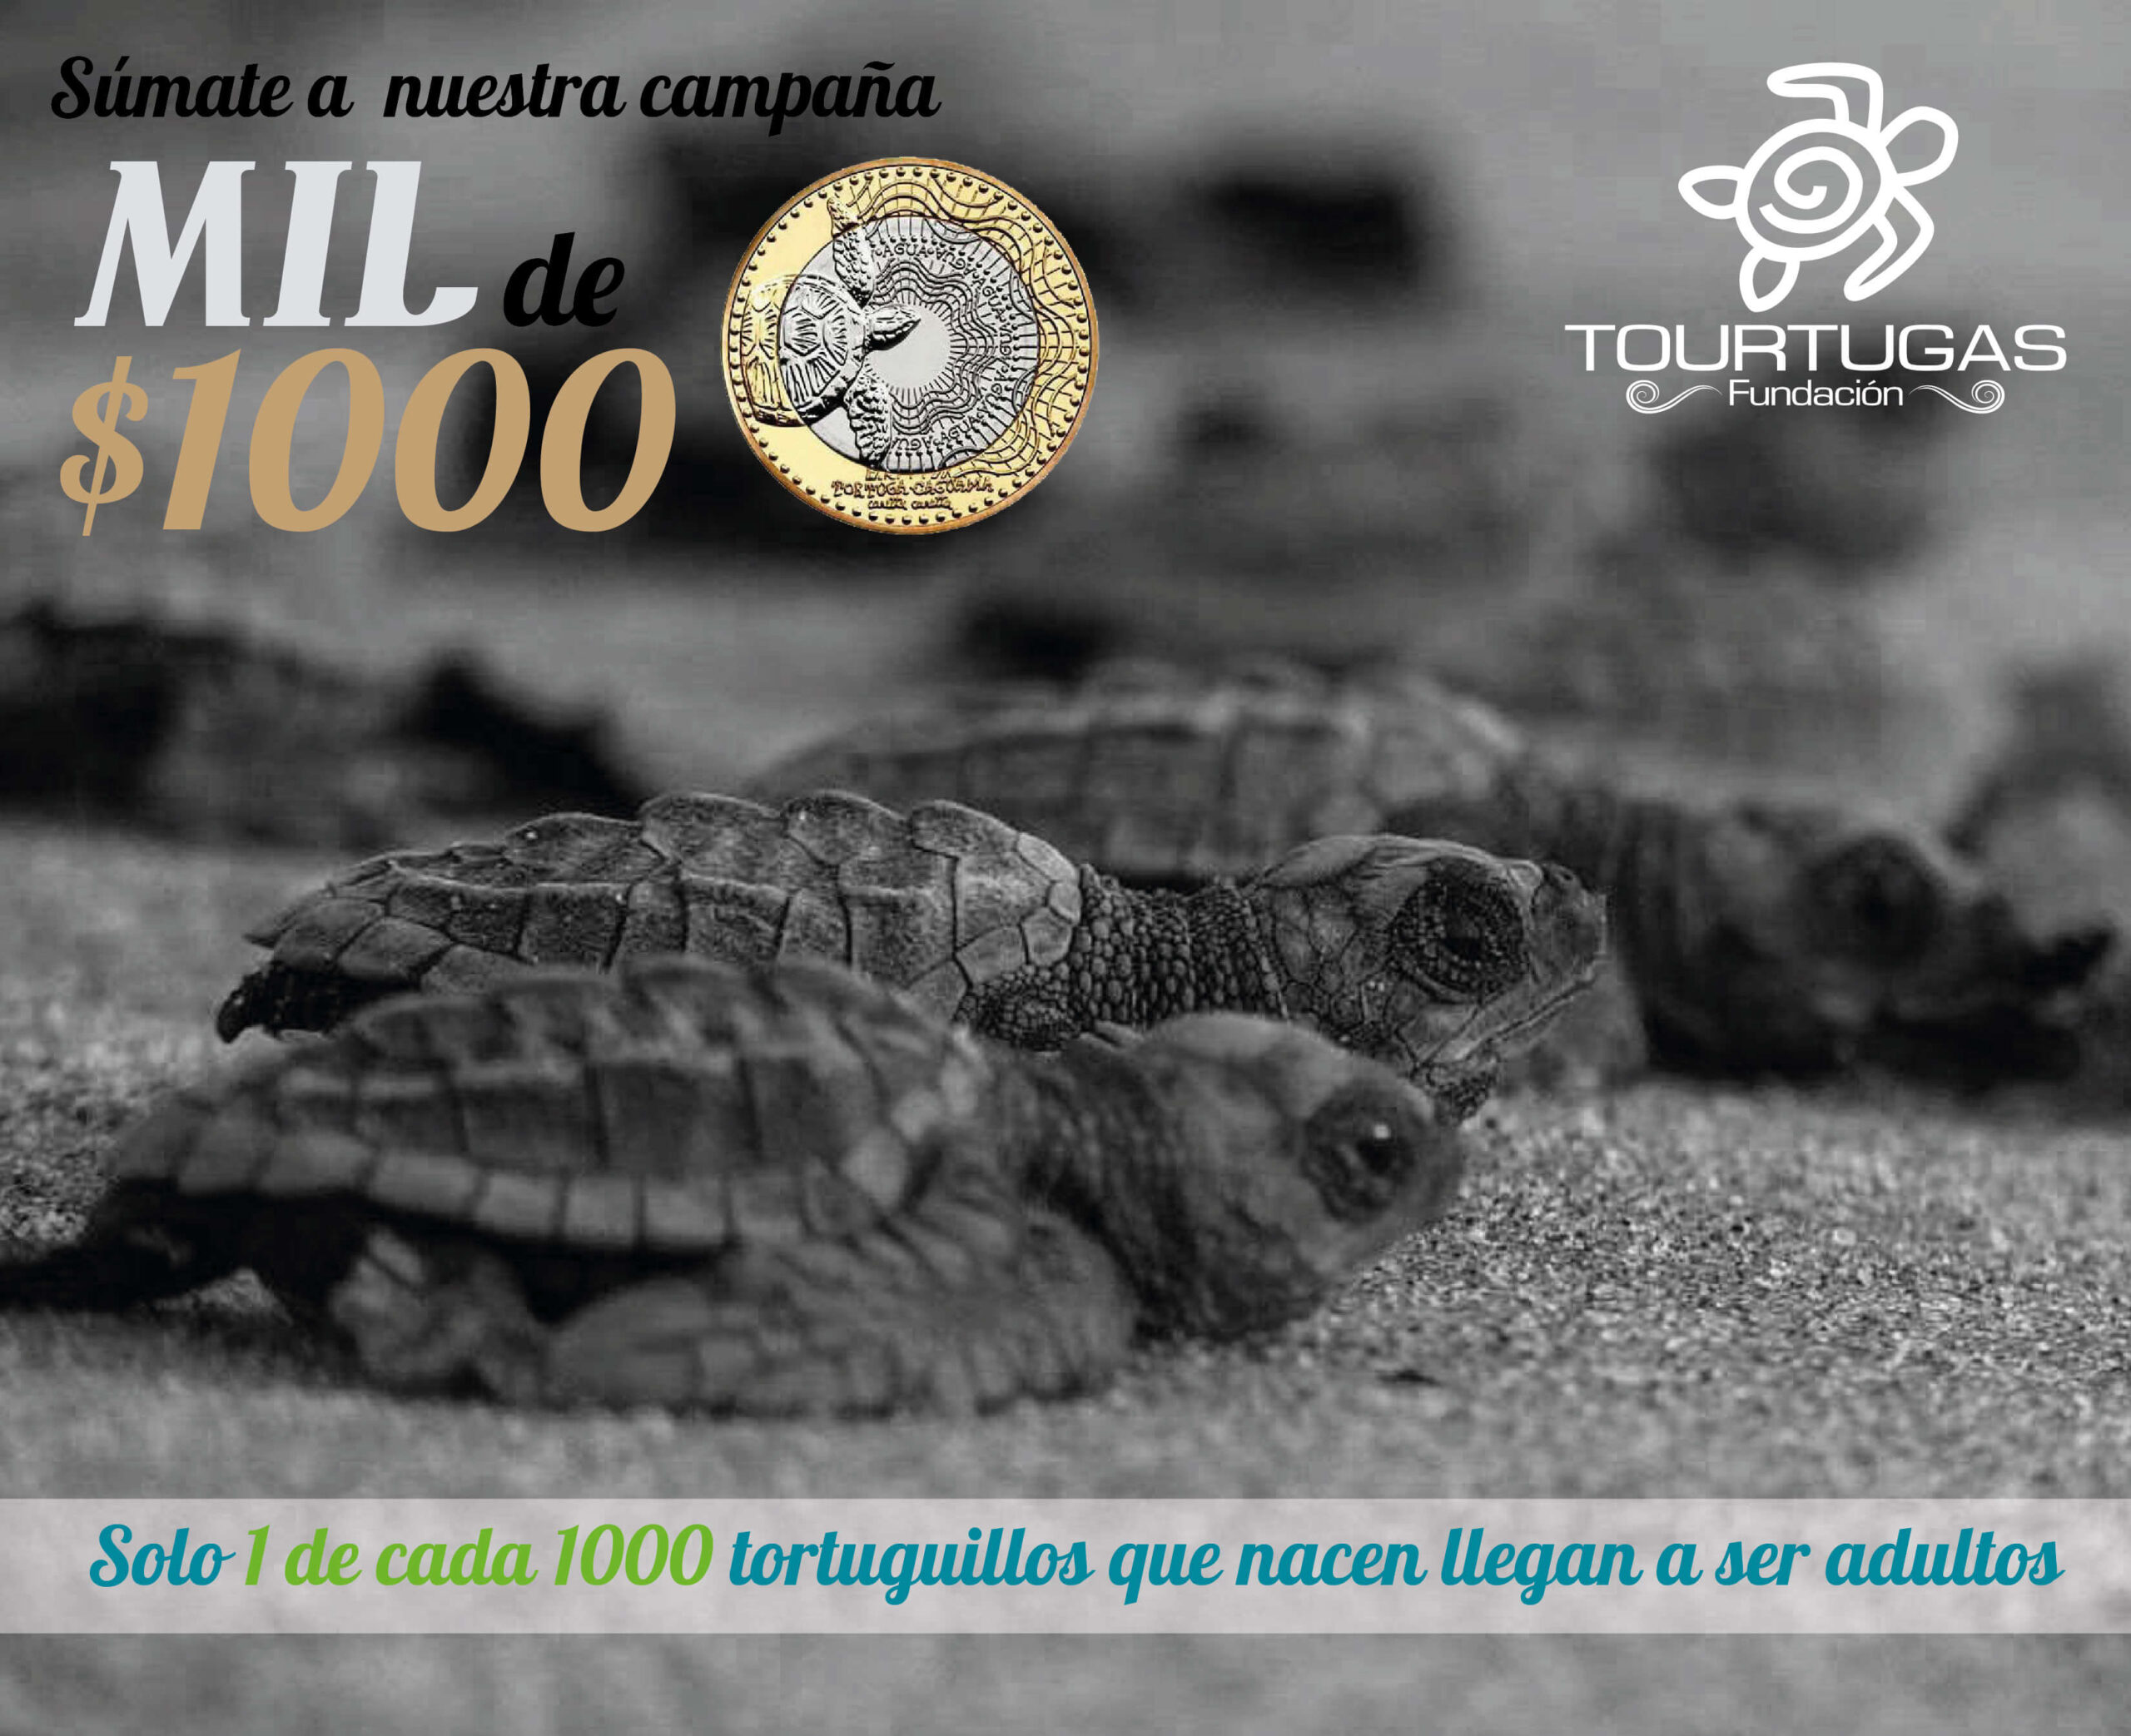 Foto en blanco y negro de tortugillos en la playa, con el nombre de la campaña, una moneda de mil por el lado que muestra la tortuga marina y la frase solo 1 de cada mil tortuguillos que nacen llega a ser adulto.